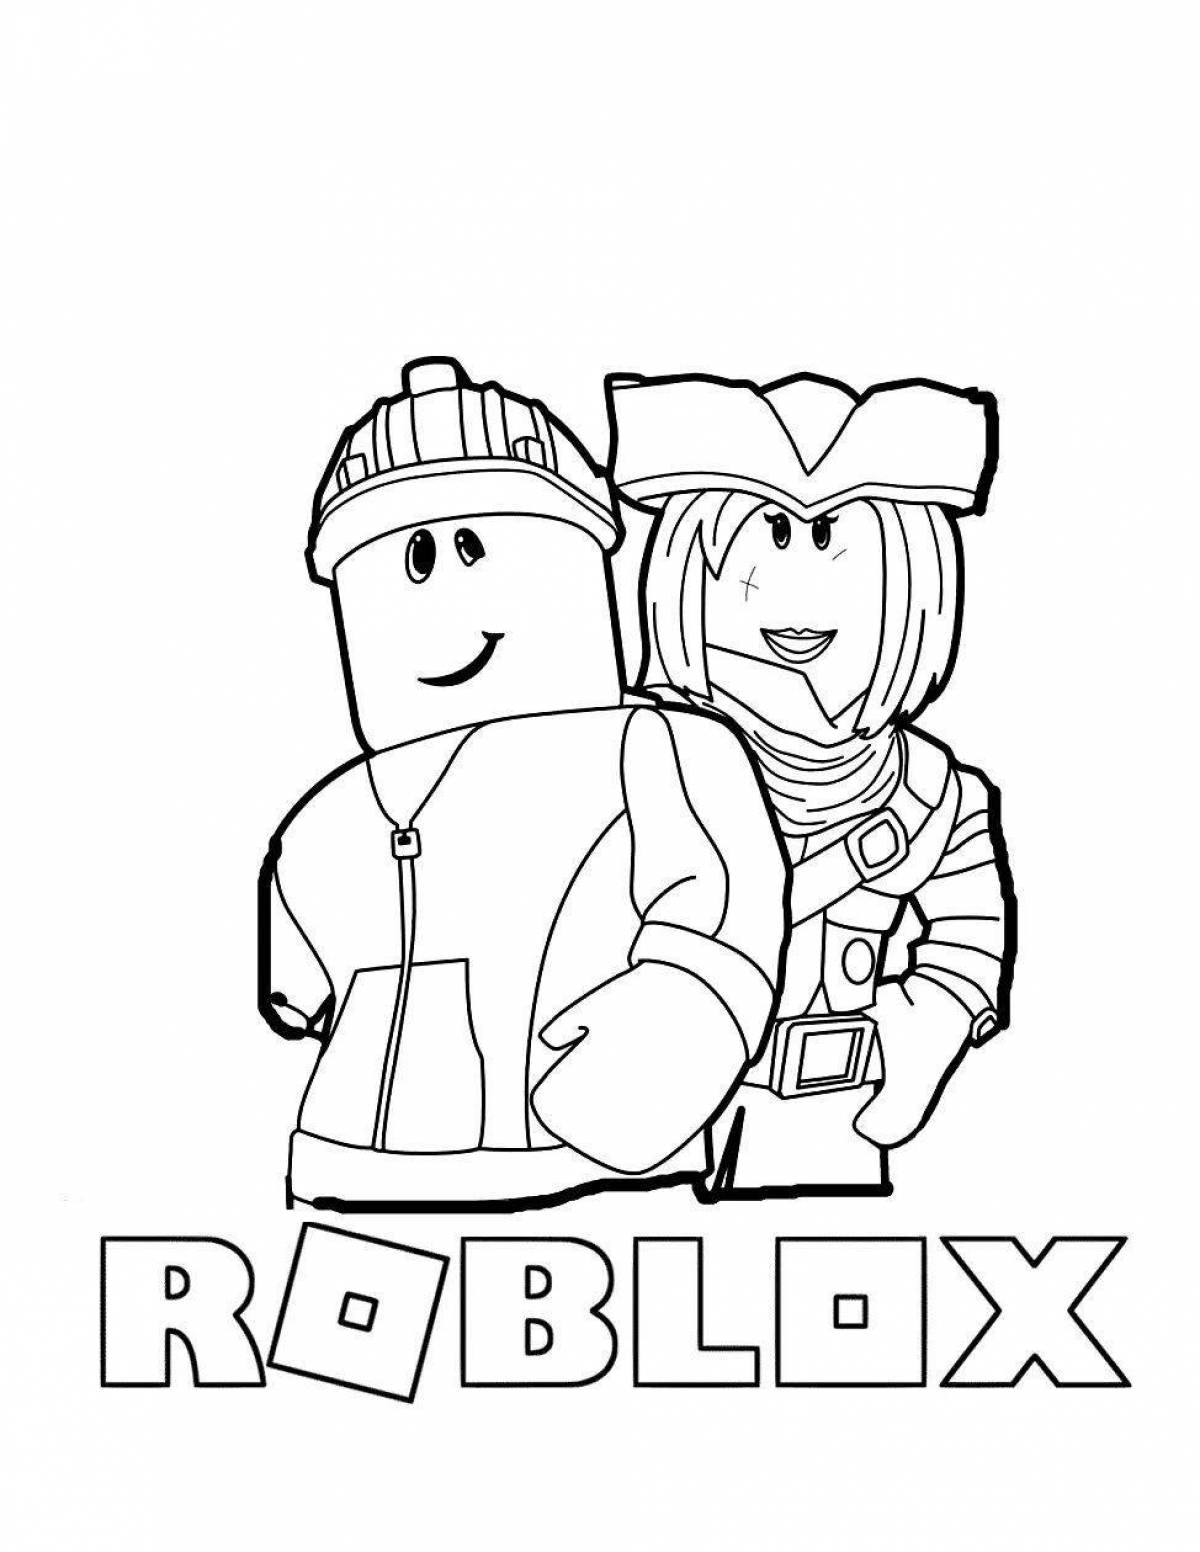 Roblox queen robloxer #1